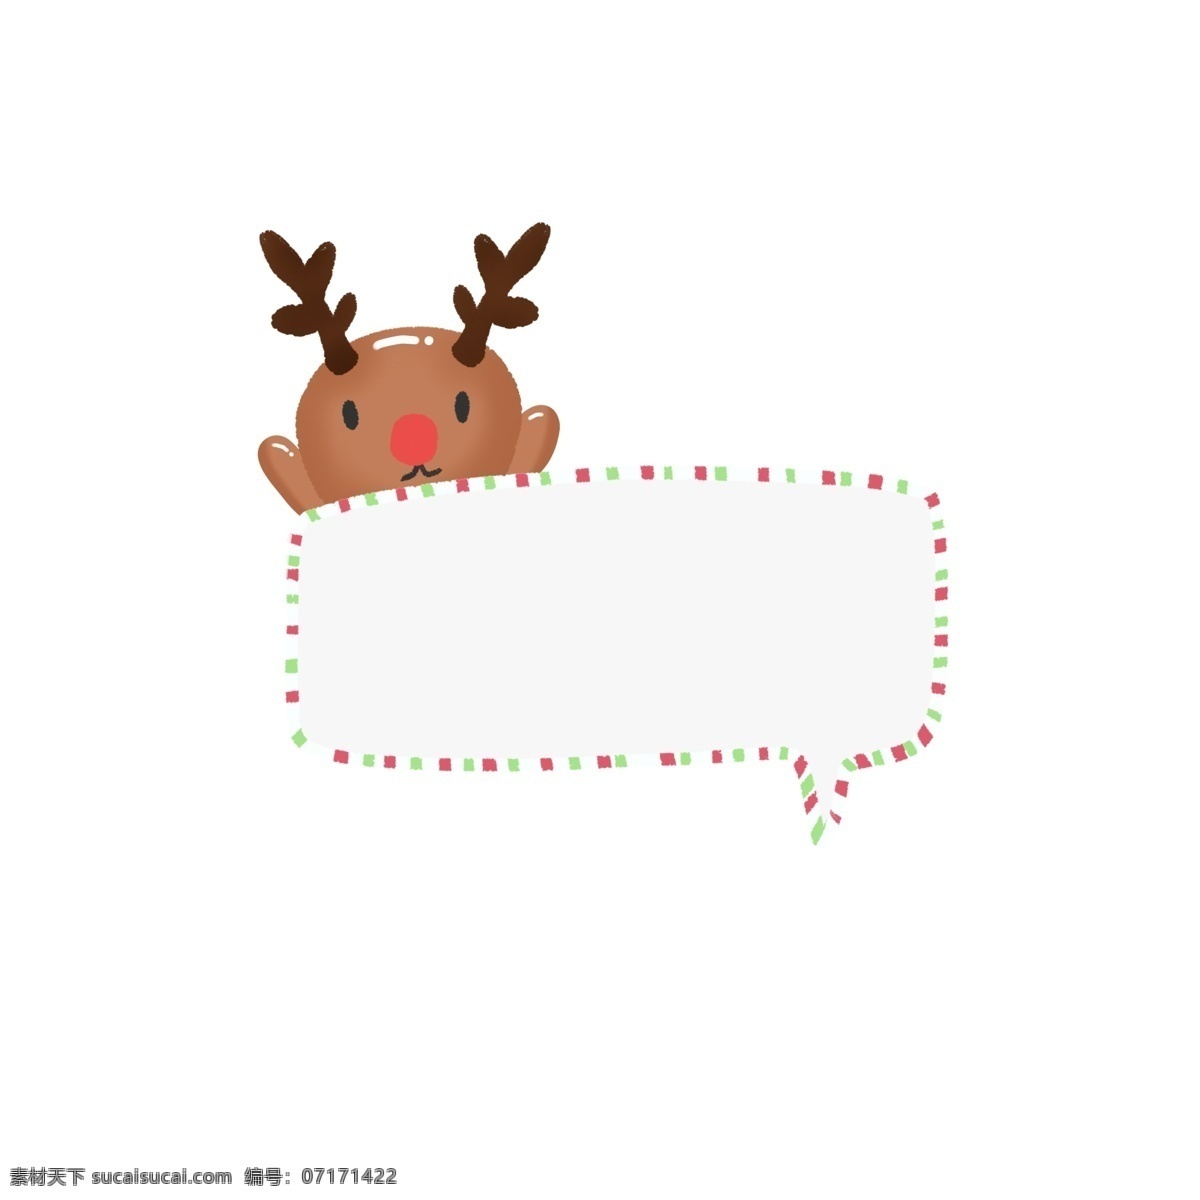 圣诞节 手绘 可爱 圣诞 边框 对话框 元素 可爱边框 麋鹿 可爱对话框 圣诞节对话框 圣诞节边框 鹿 圣诞鹿 圣诞装饰物 圣诞节装饰